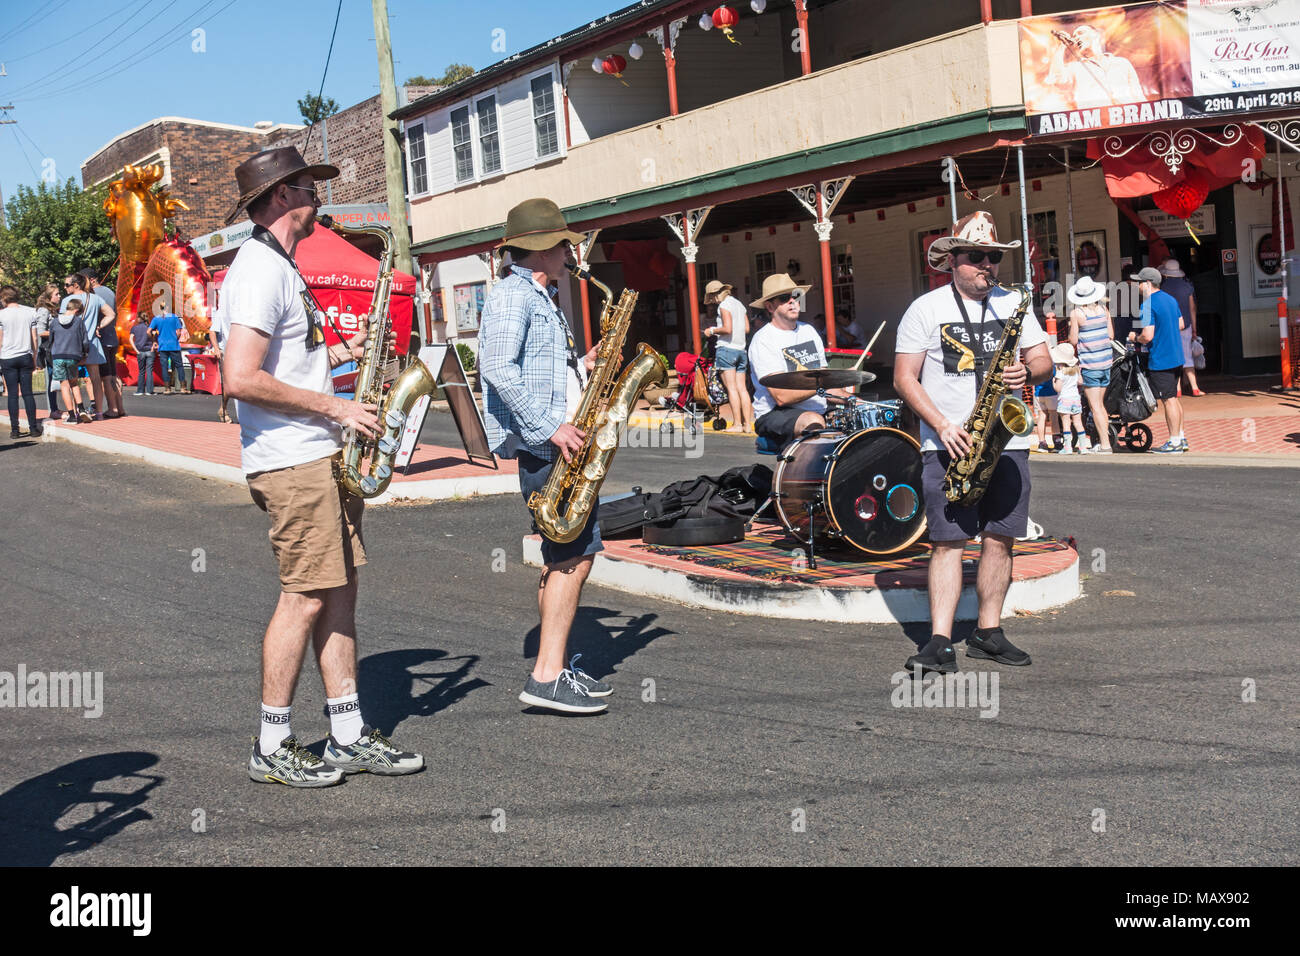 Straße Leistung von der Sax Summit Jazz Combo am Markttag in Nundle NSW Australien. Stockfoto